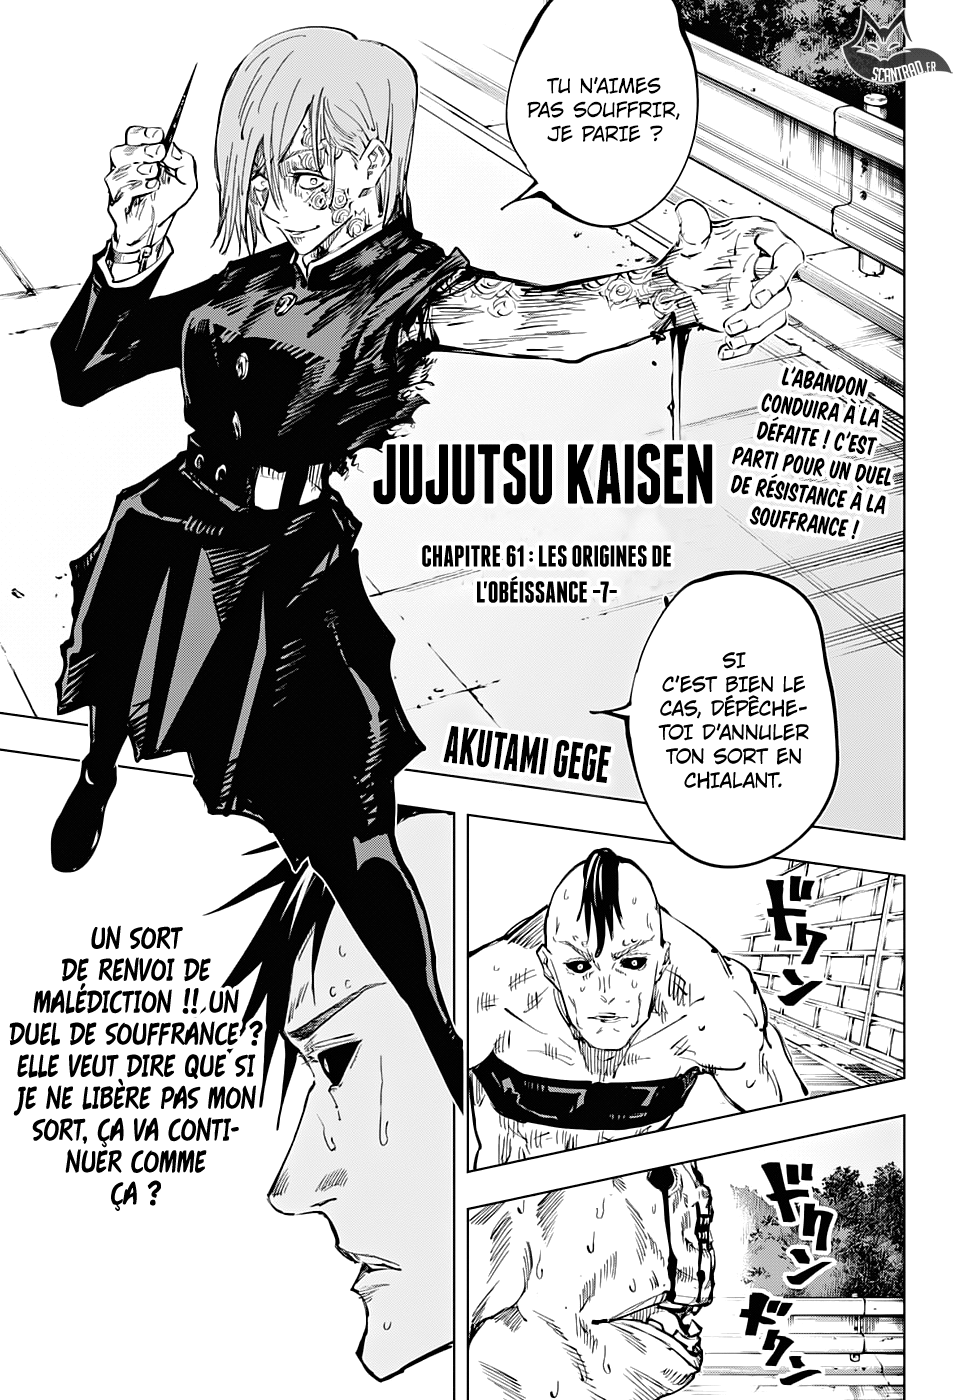 Jujutsu Kaisen: Chapter chapitre-61 - Page 1